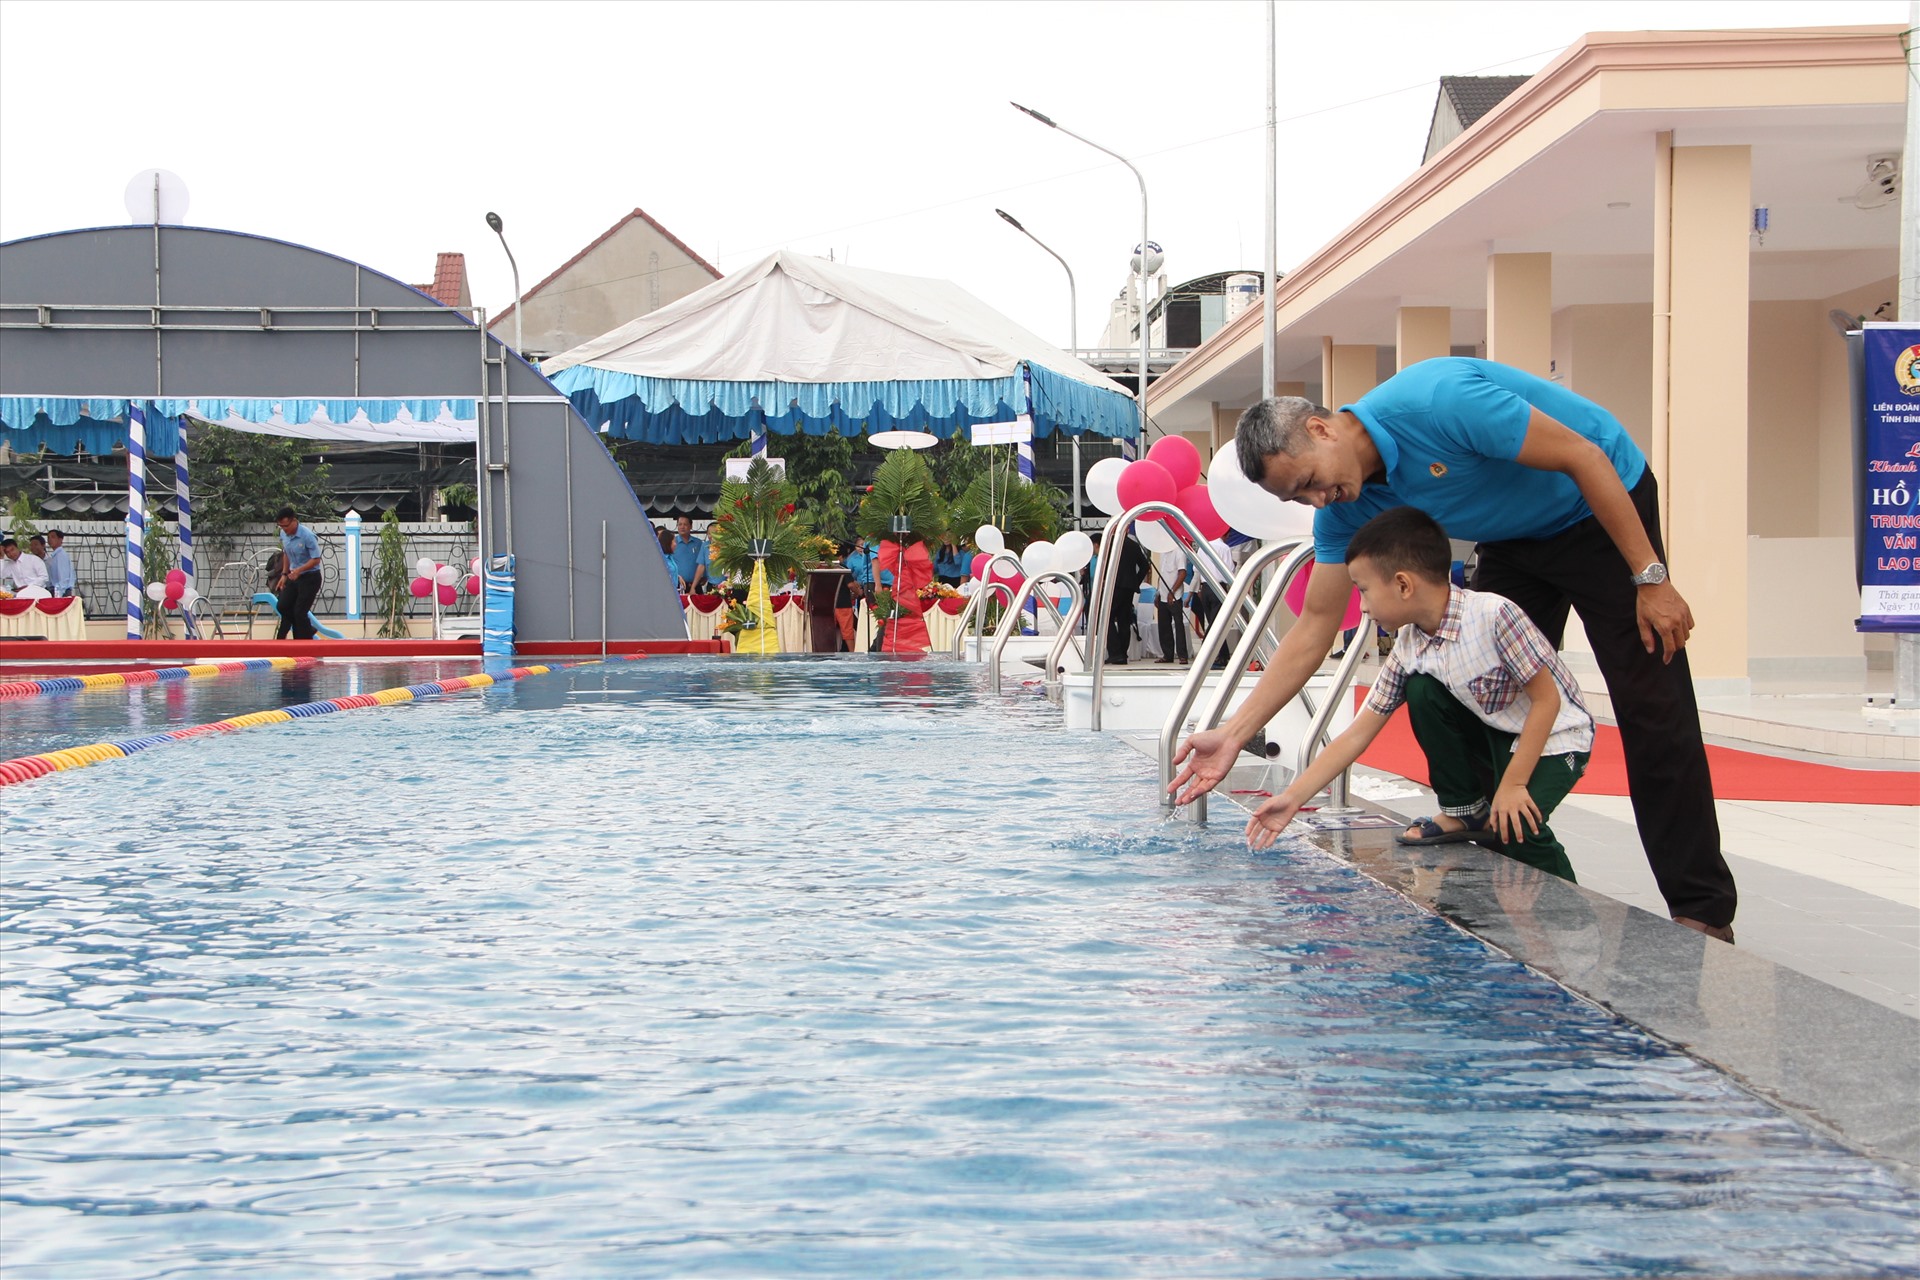 Còn đây là  hồ bơi của Trung tâm Văn hóa Loa động Bình Dương để đưa vào hoạt động phục vụ người lao động và con em tại thành phố Thuận An, Bình Dương.